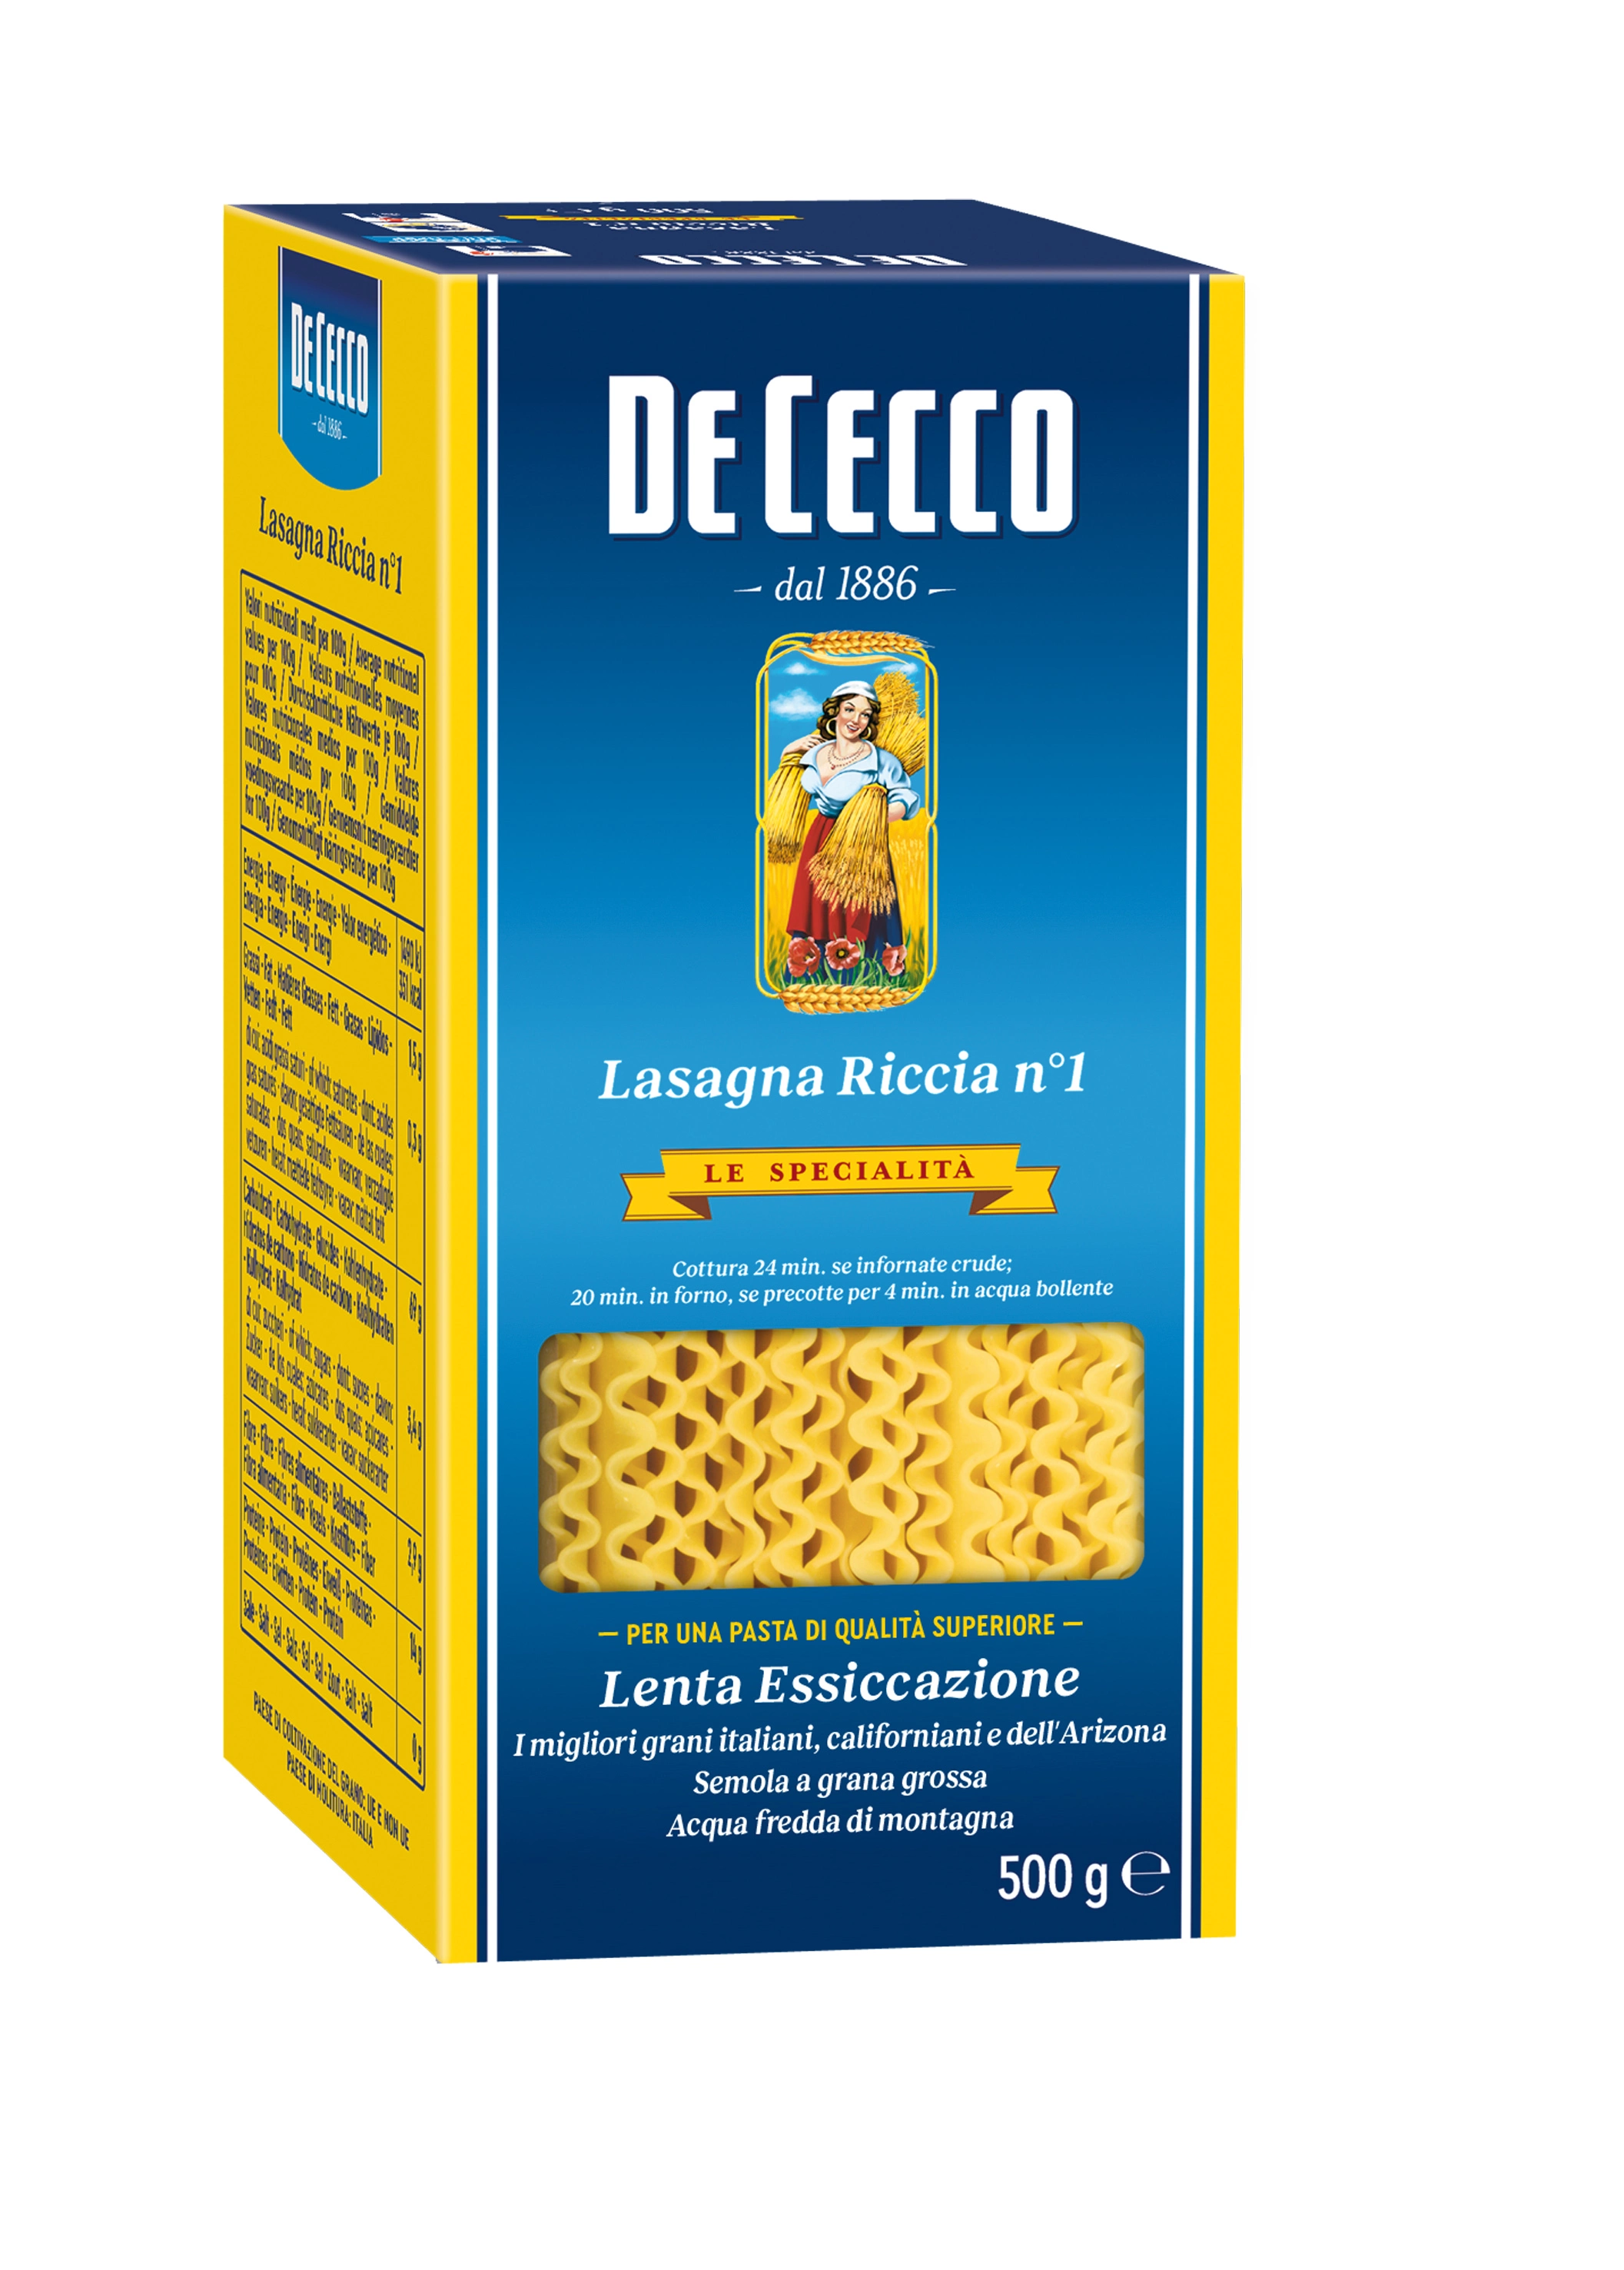 De Cecco Lasagna N1 500g